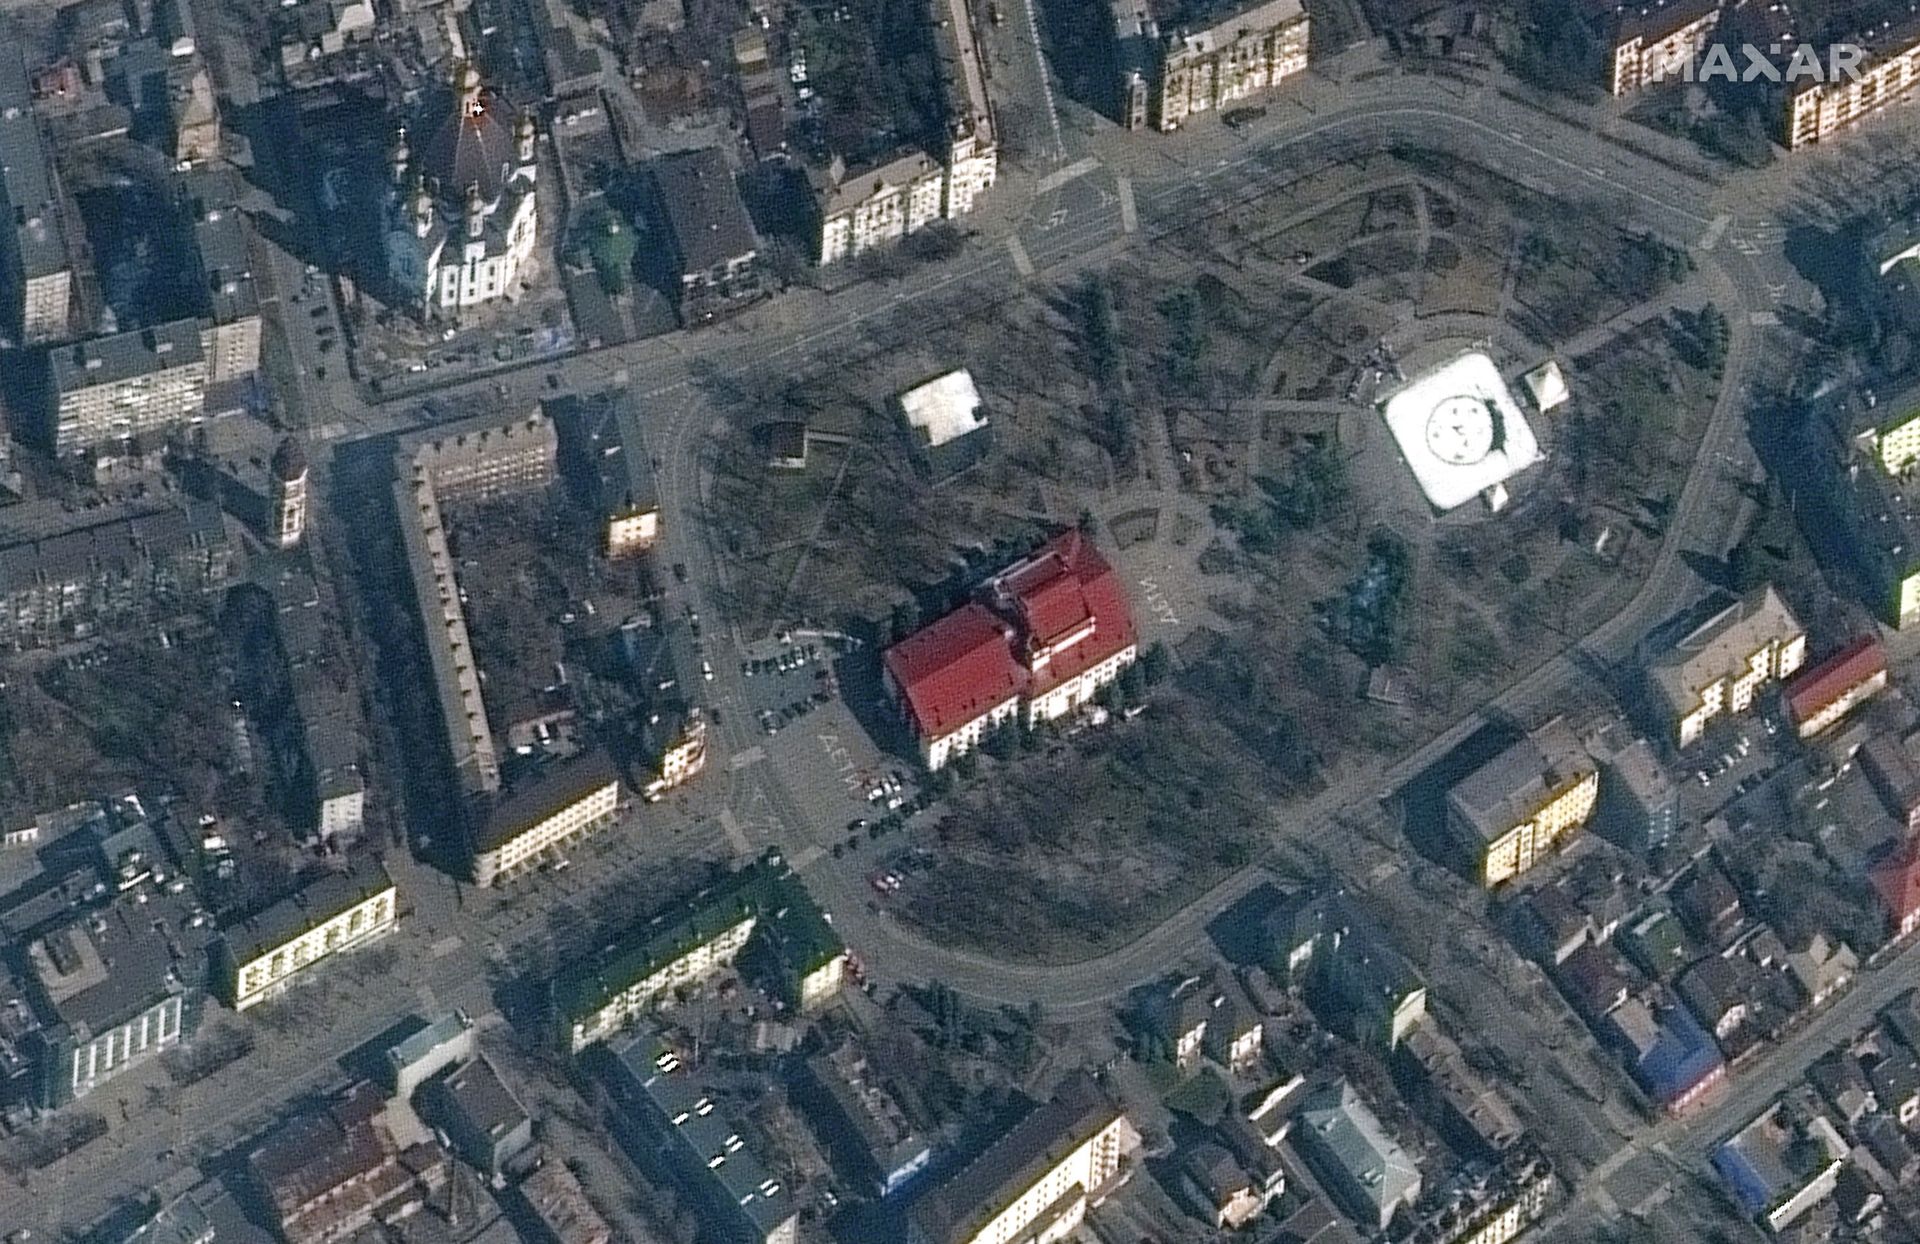 Théâtre municipal photographié par le satellite Maxar, au 14 mars 2022